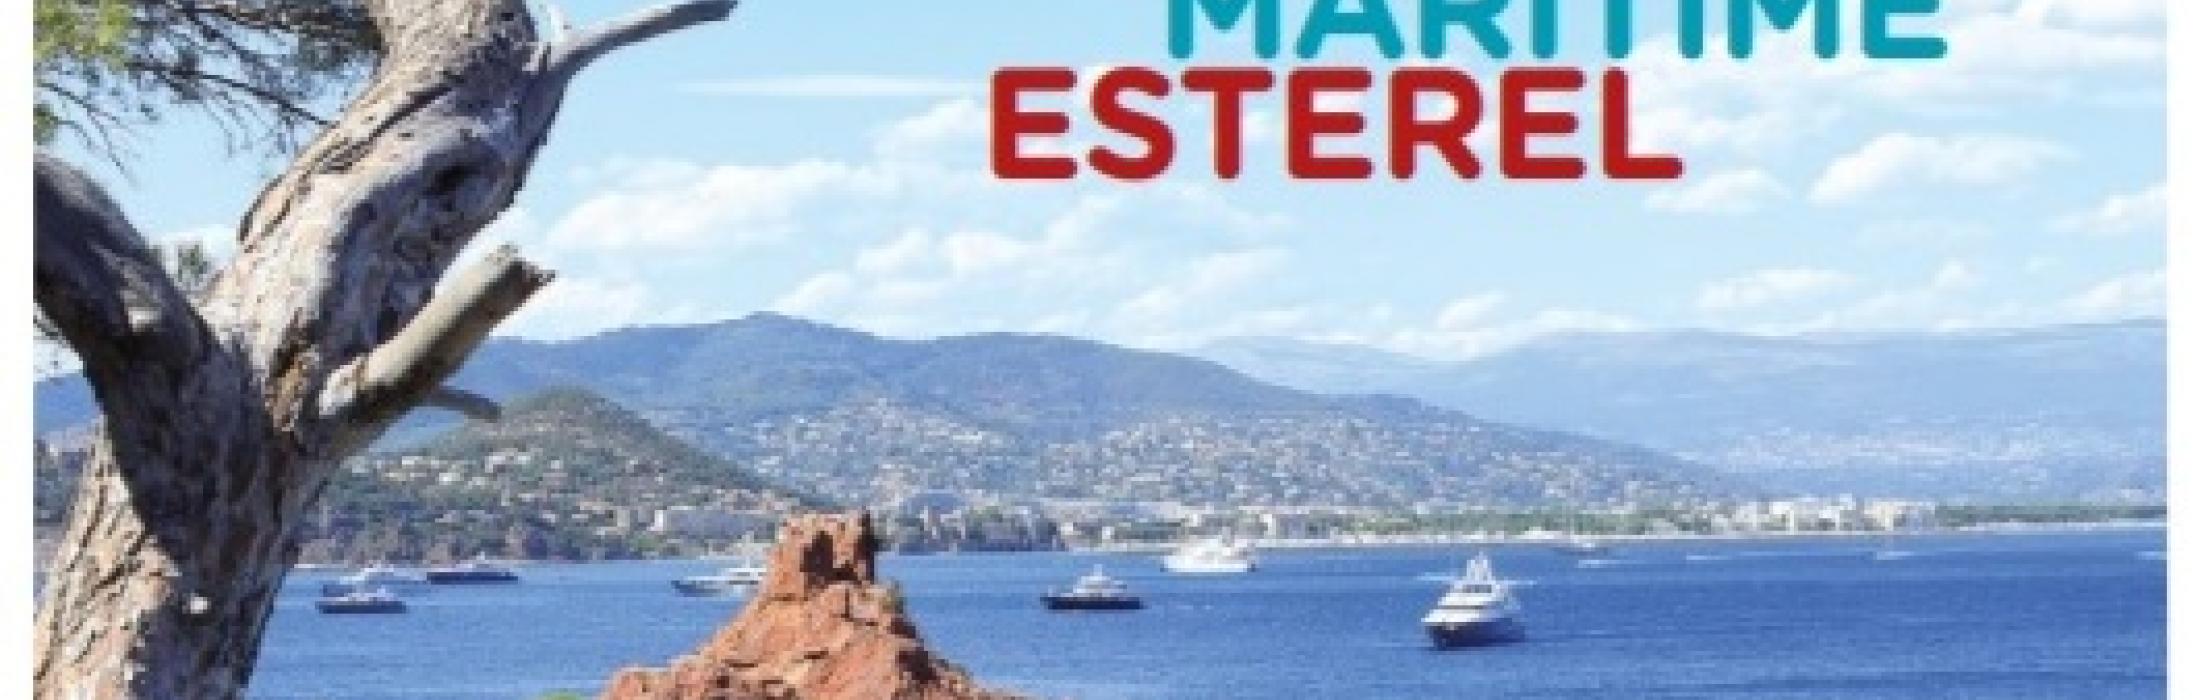 Cet été, pour des déplacements sans embouteillage, pensez à la Navette Maritime Estérel !